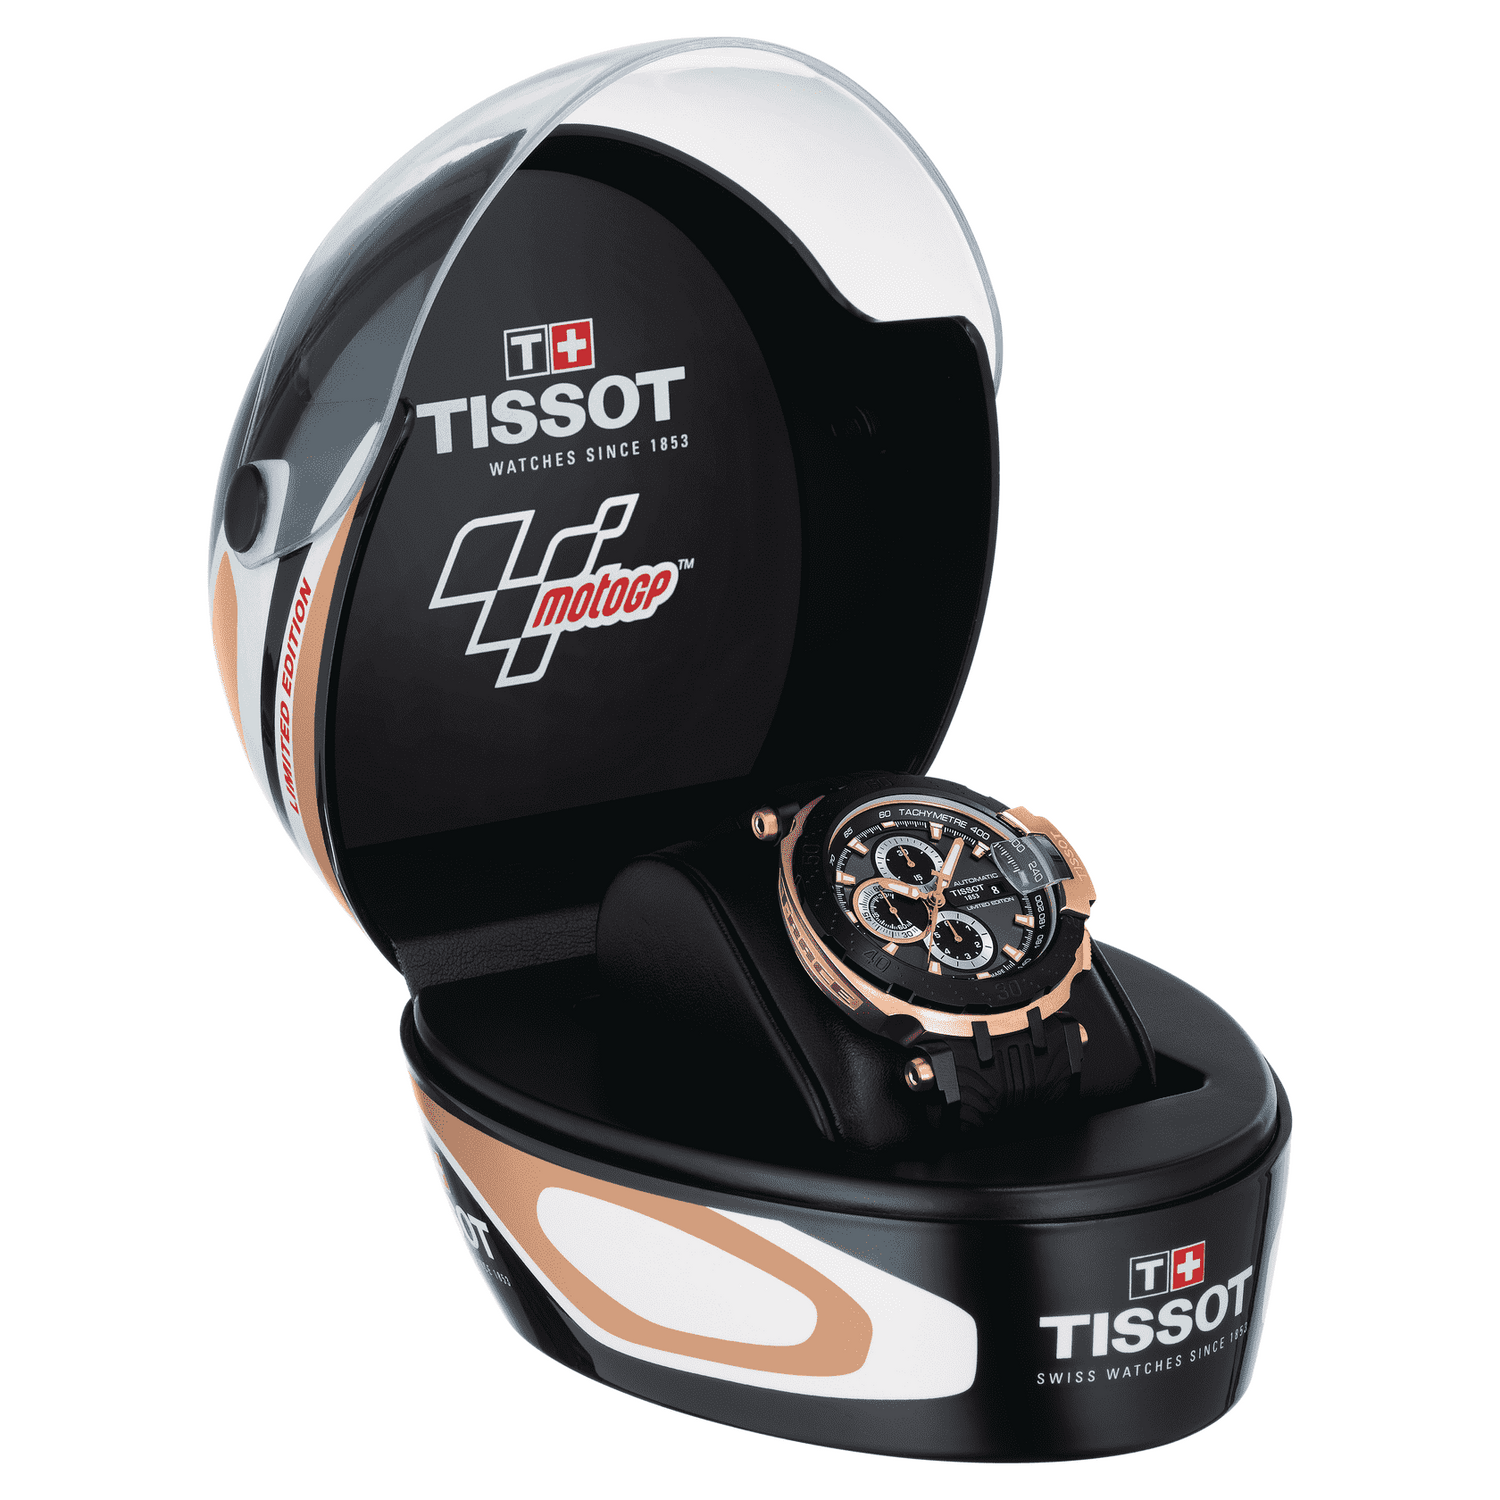 Tissot T-Race MotoGP 2018 Automatic Limited Edition